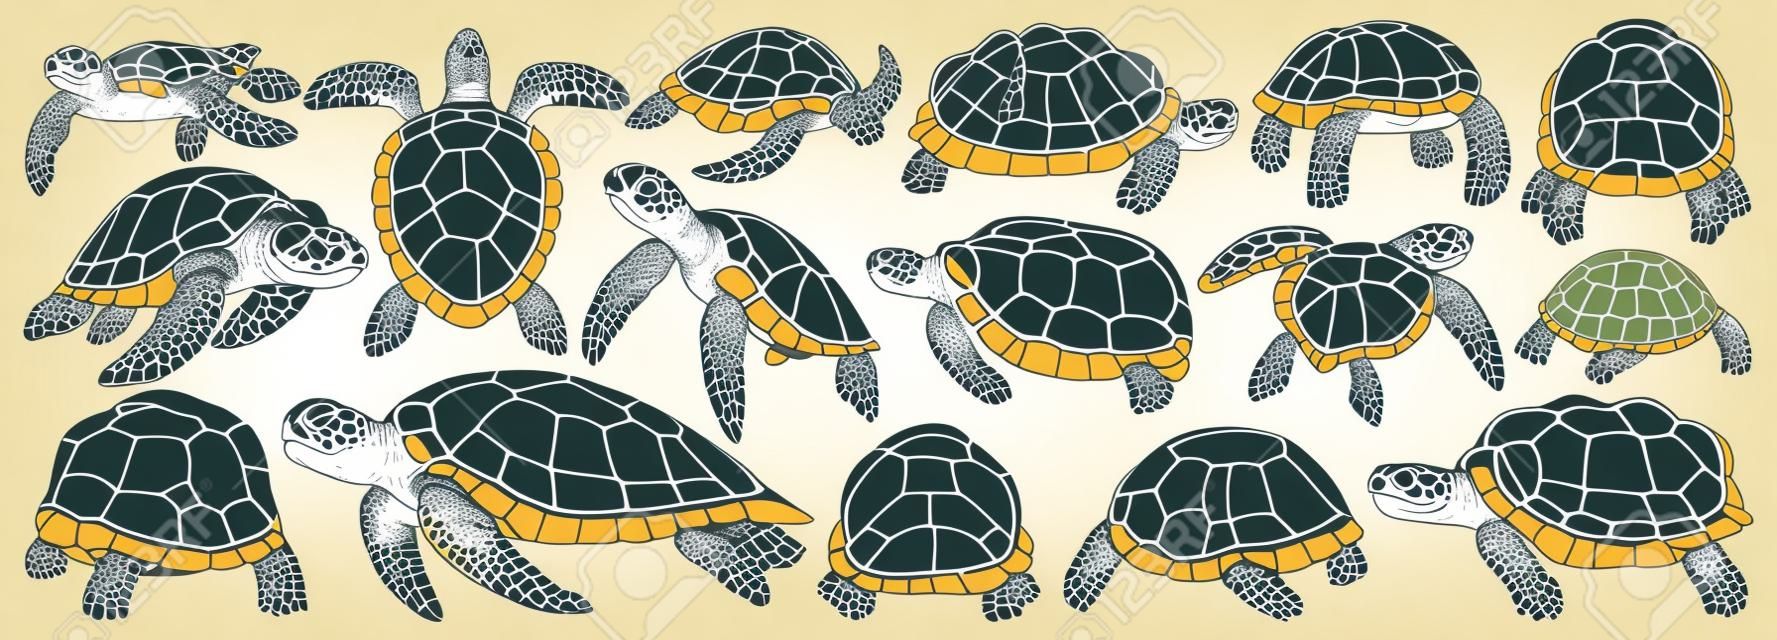 cone do conjunto de desenhos animados do vetor da tartaruga do mar. Tartaruga da ilustração do vetor no fundo branco. Isolar ícones do conjunto de desenhos animados tartaruga do mar.